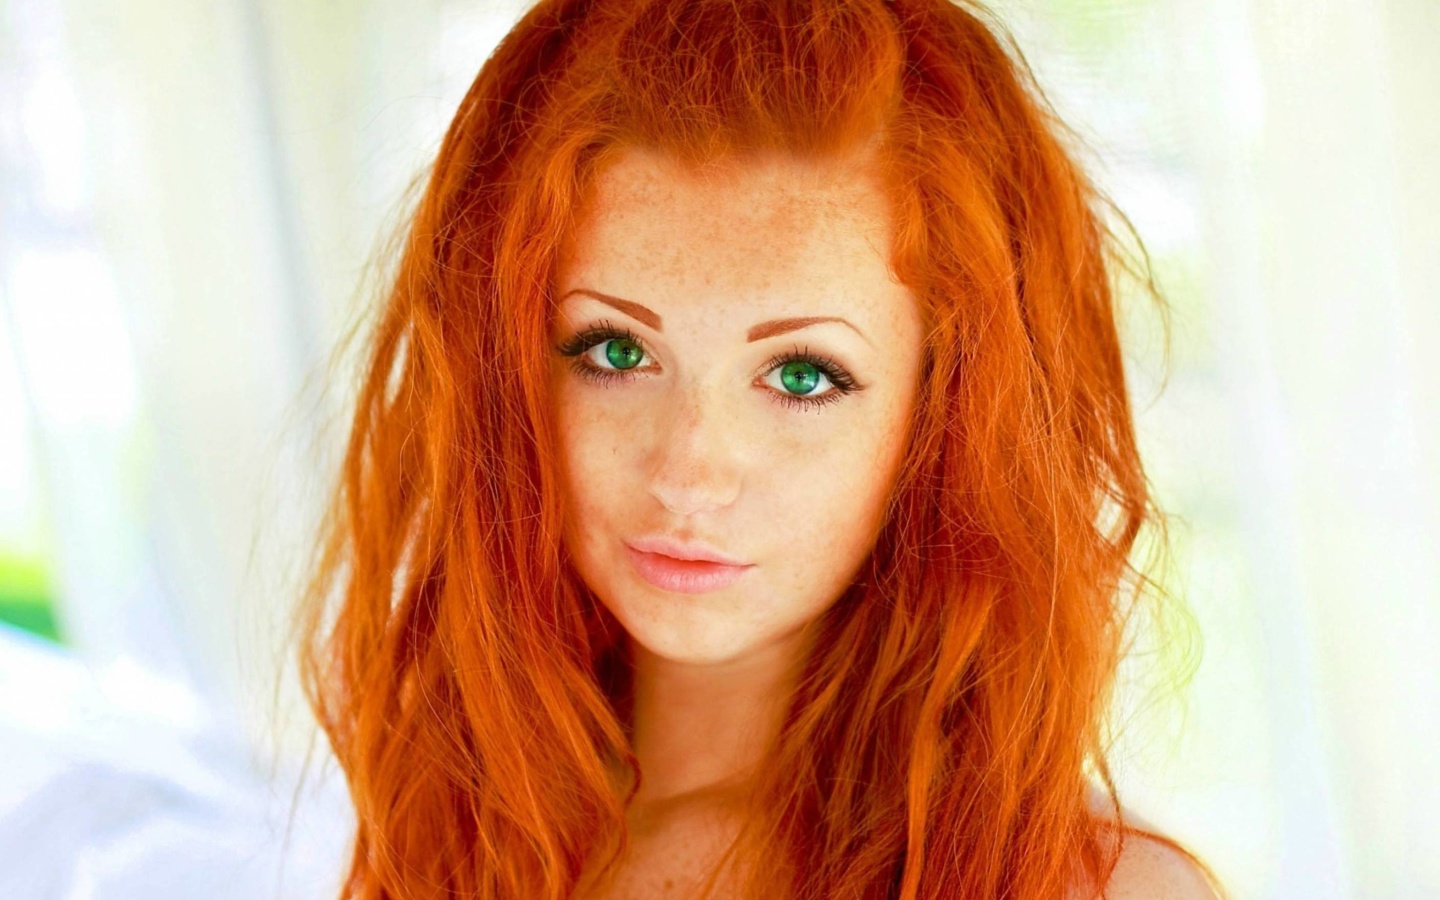 Fondo de pantalla Redhead Girl 1440x900